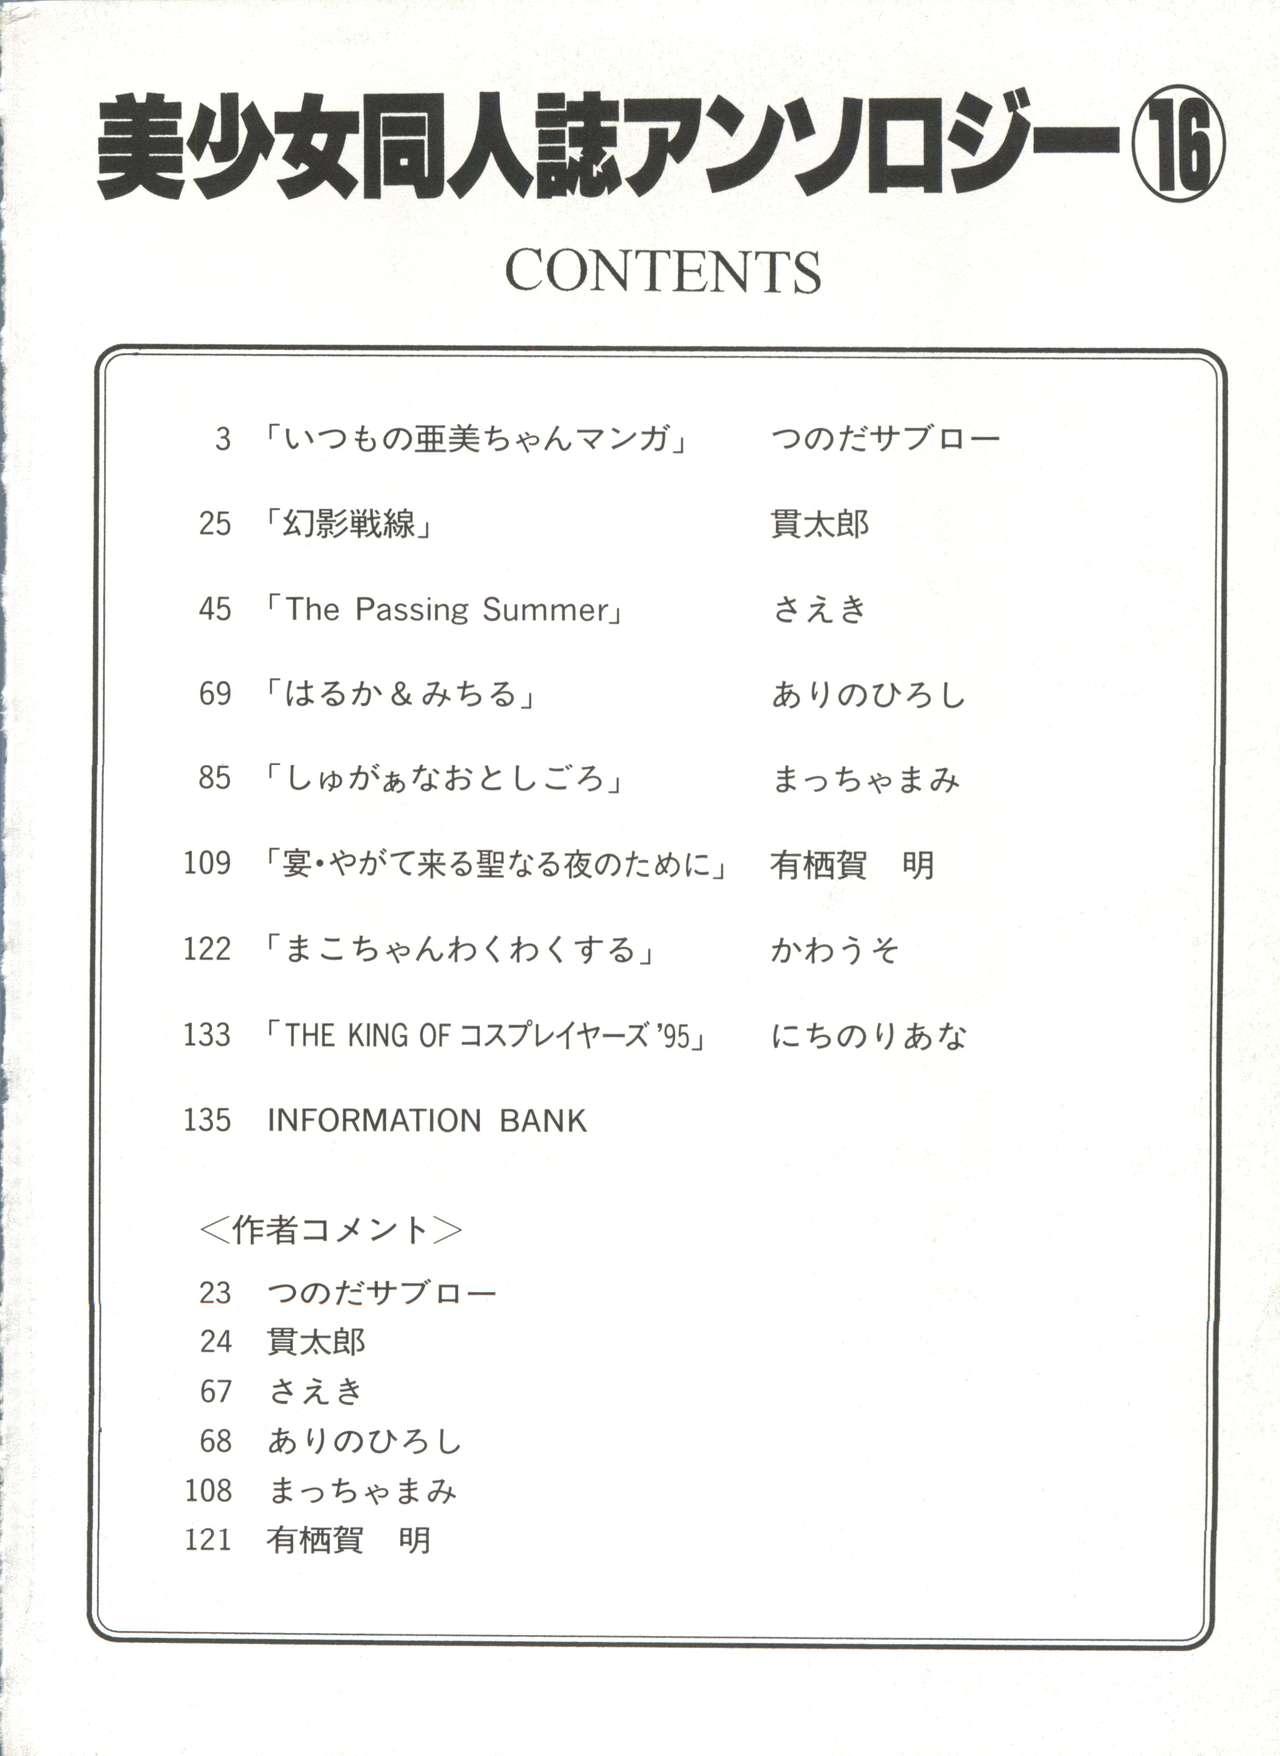 Bishoujo Doujinshi Anthology 16 - Moon Paradise 10 Tsuki no Rakuen 6